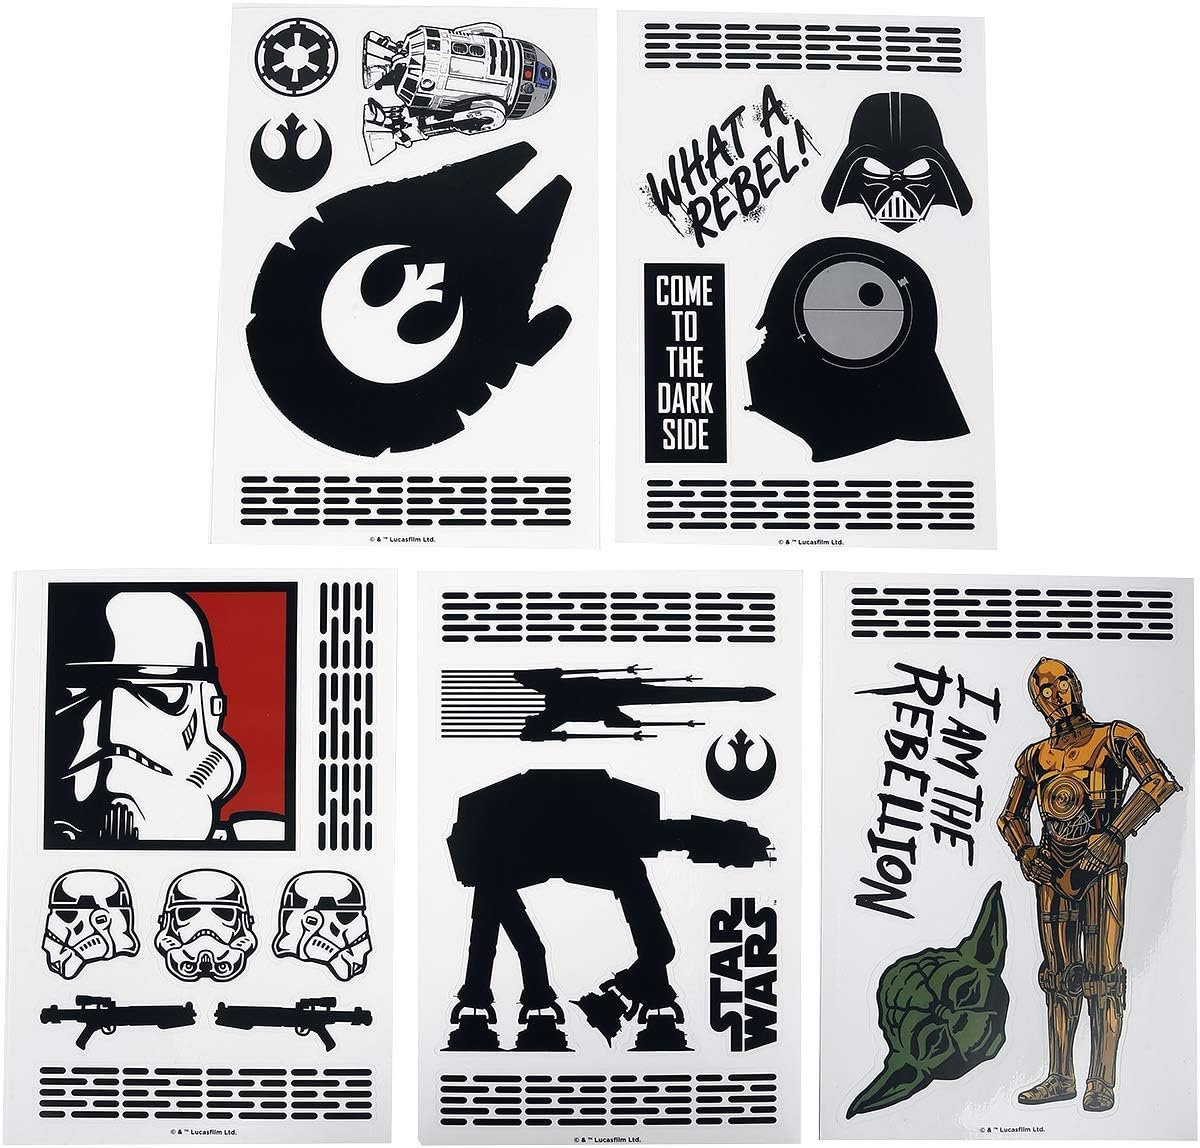 Star Wars Tech Stickers Gadget Set (29 Aufkleber)